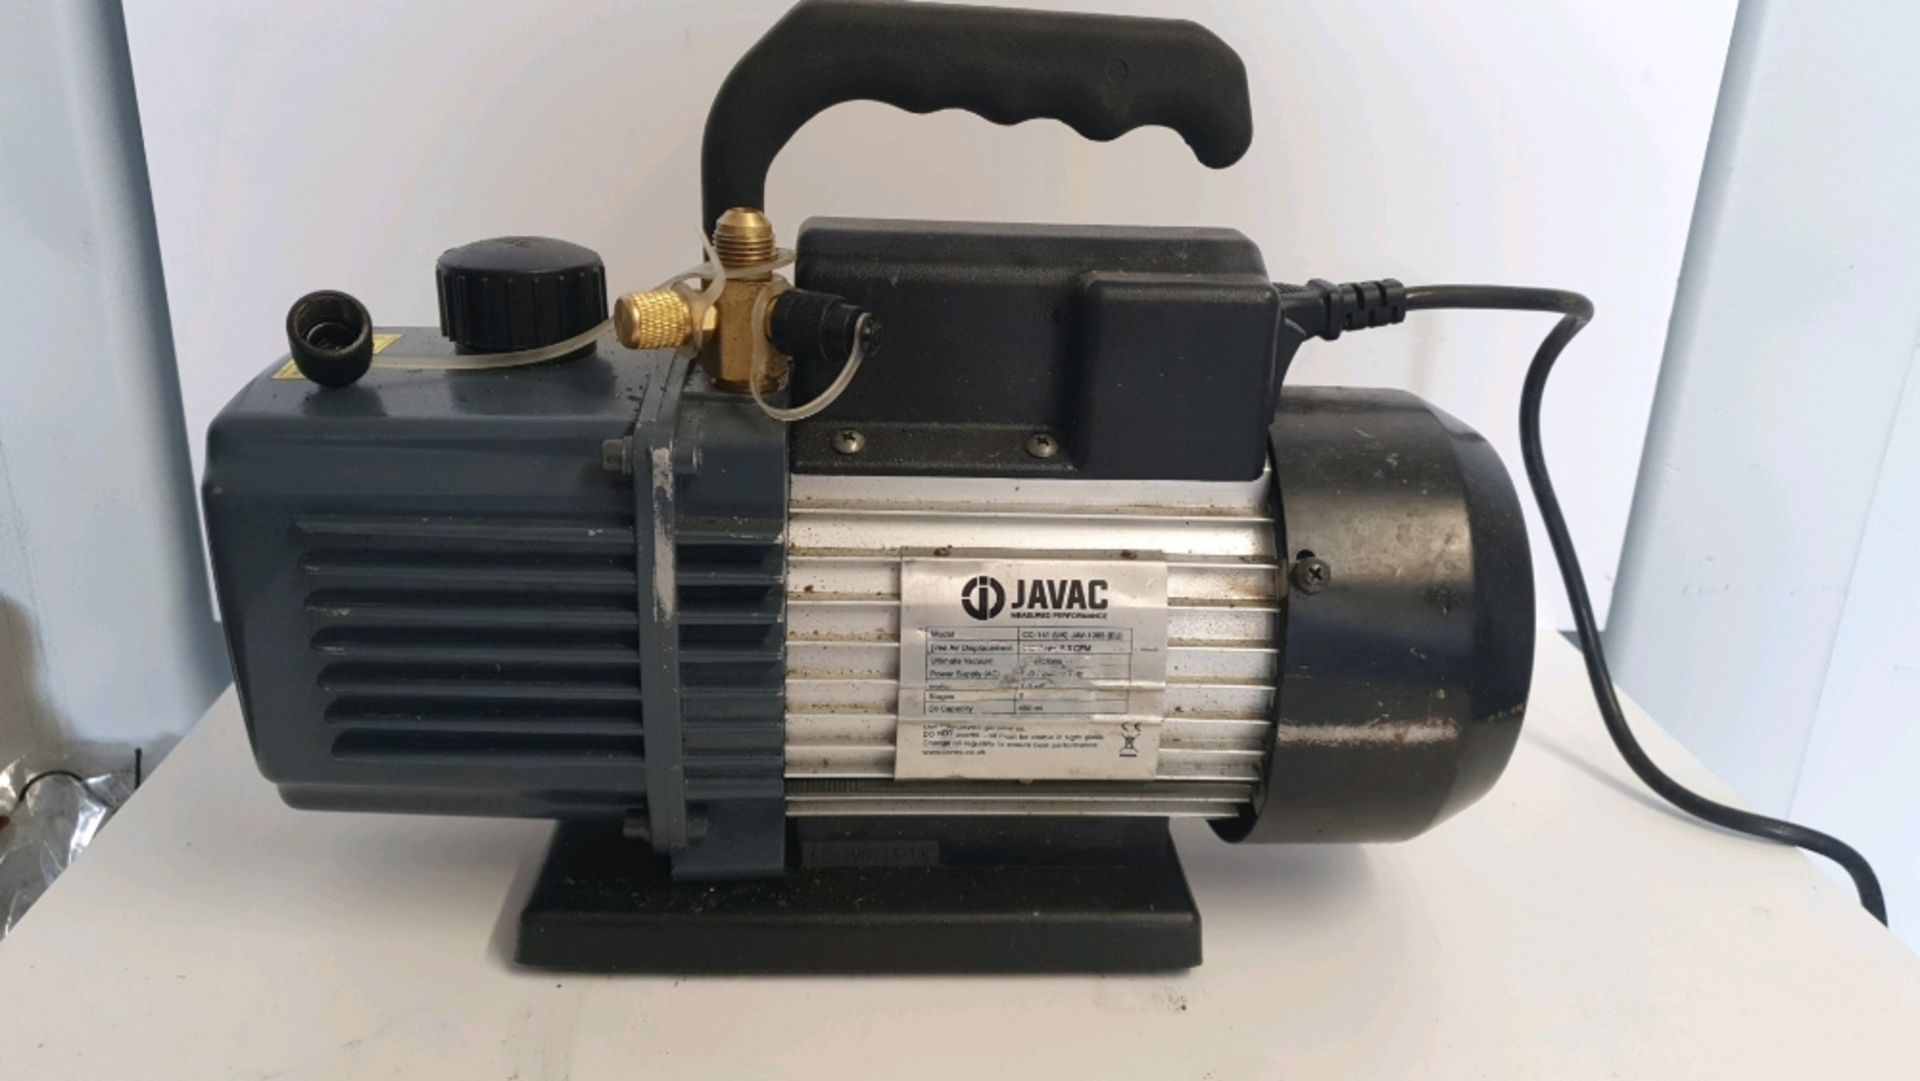 Javac CC-141 Vacuum Pump Dual Voltage Refrigeration Air Conditioning 5.3 CFM